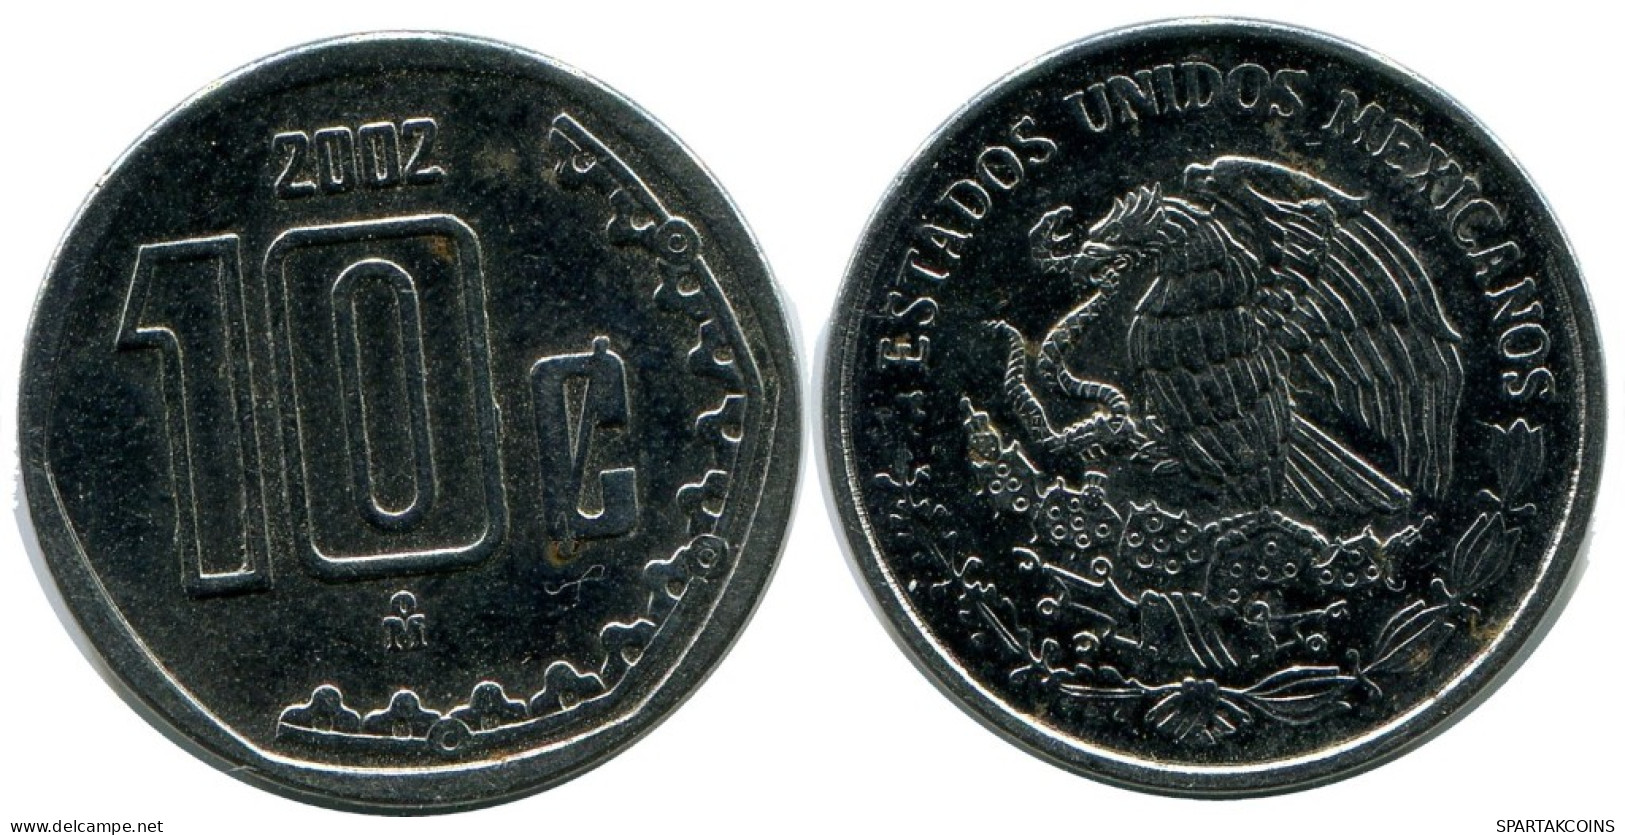 10 CENTAVOS 2002 MEXICO Coin #AH414.5.U.A - México